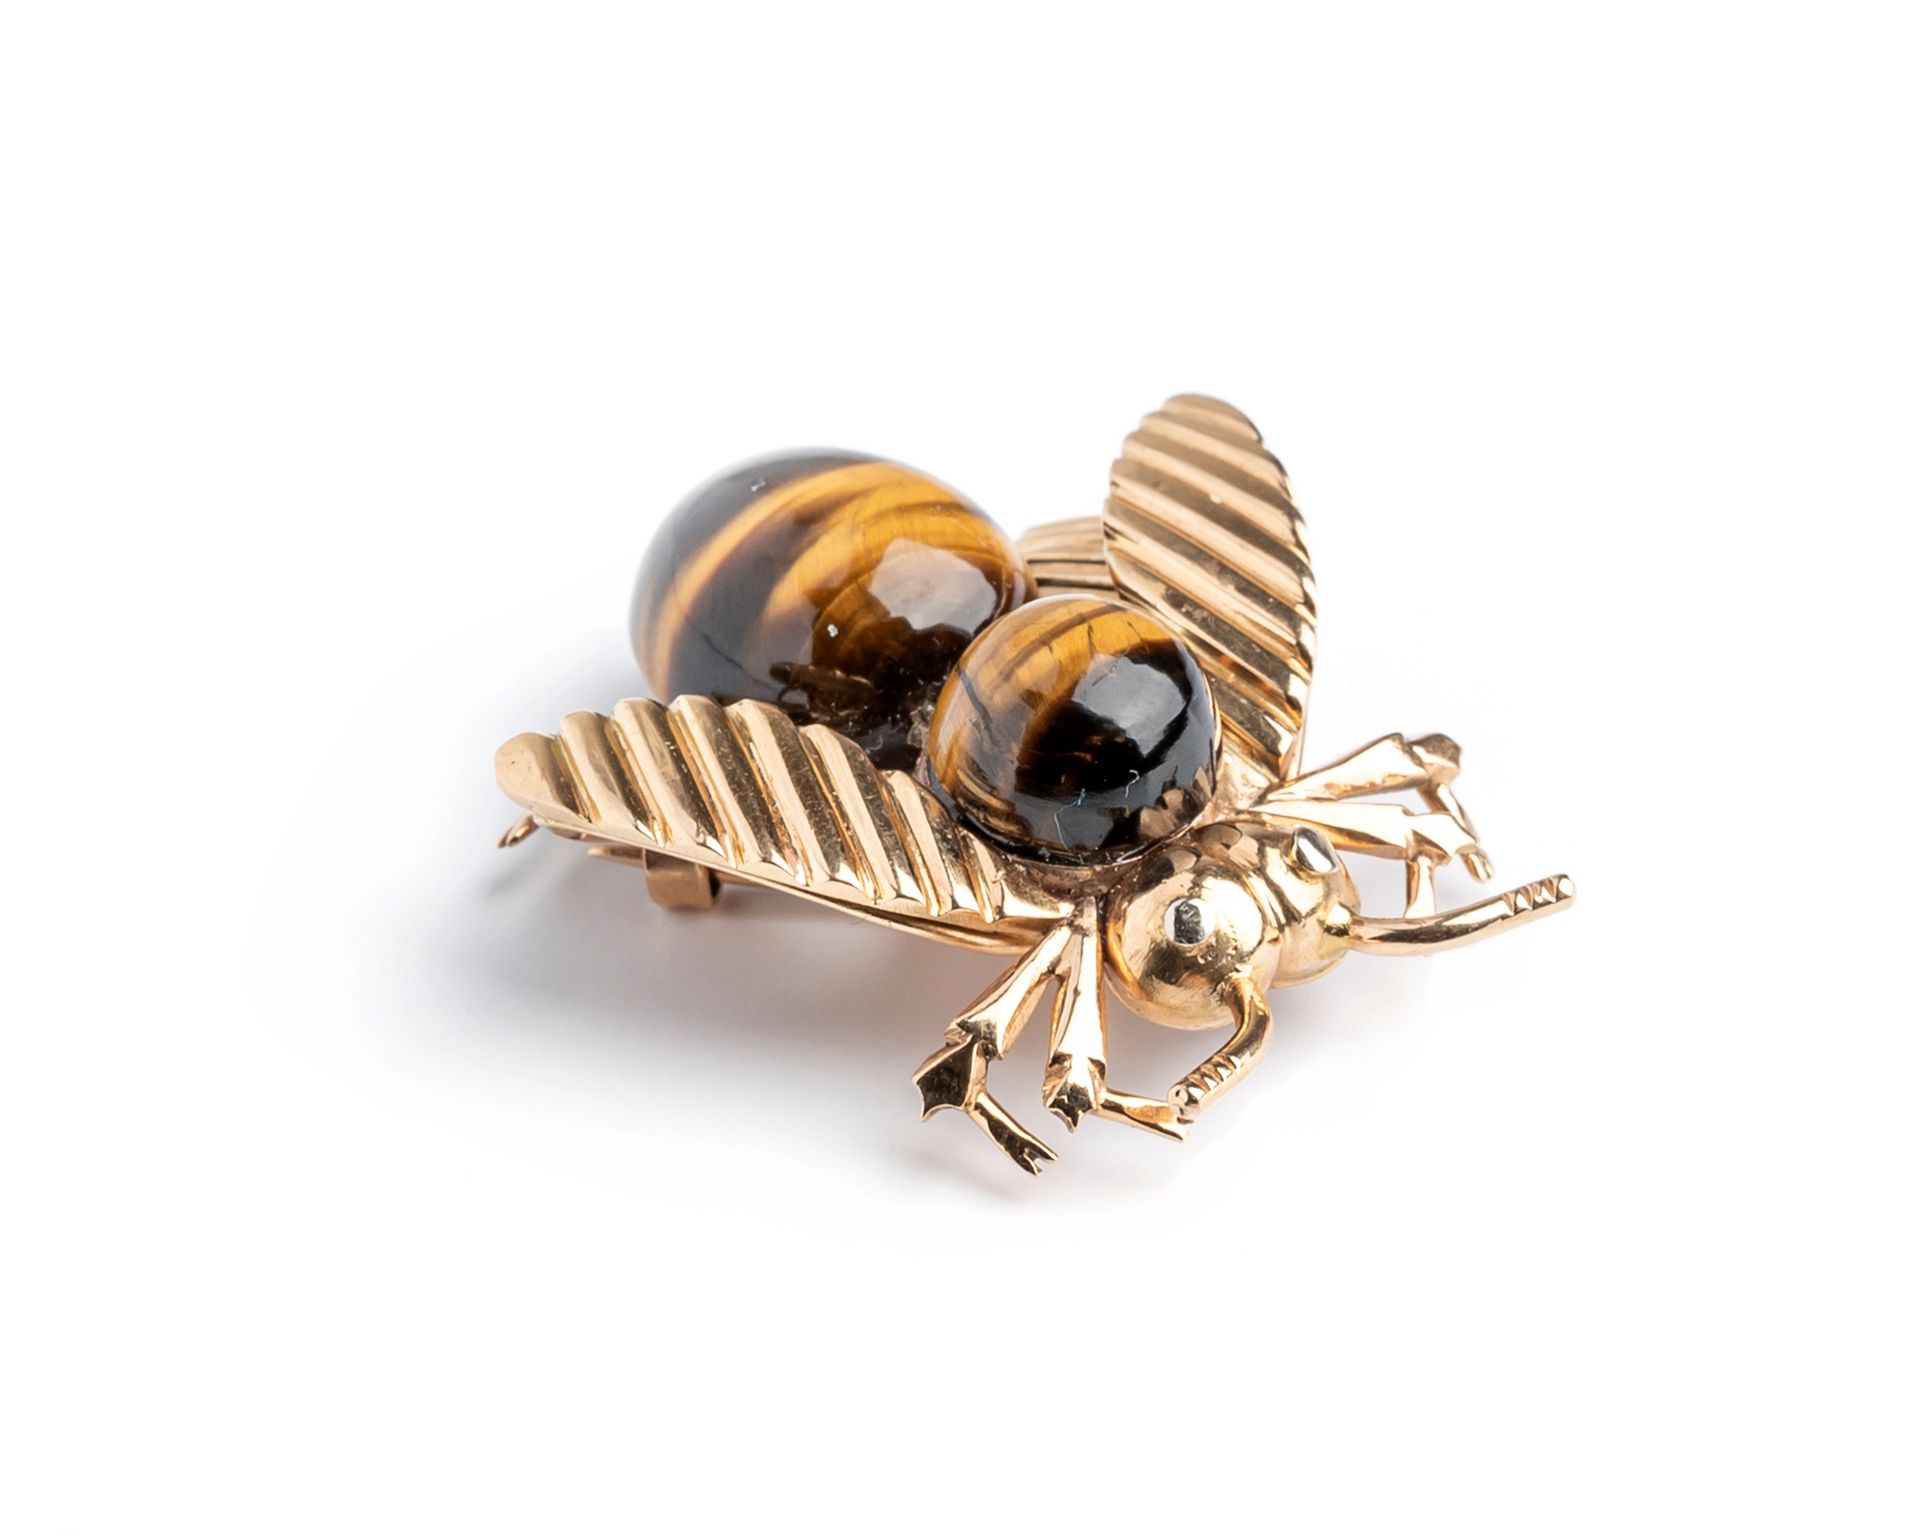 Null 18K黄金（75万分之一）"蜜蜂 "胸针，主体装饰有两个凸圆形虎眼。
长度：4厘米
毛重：13.4克。